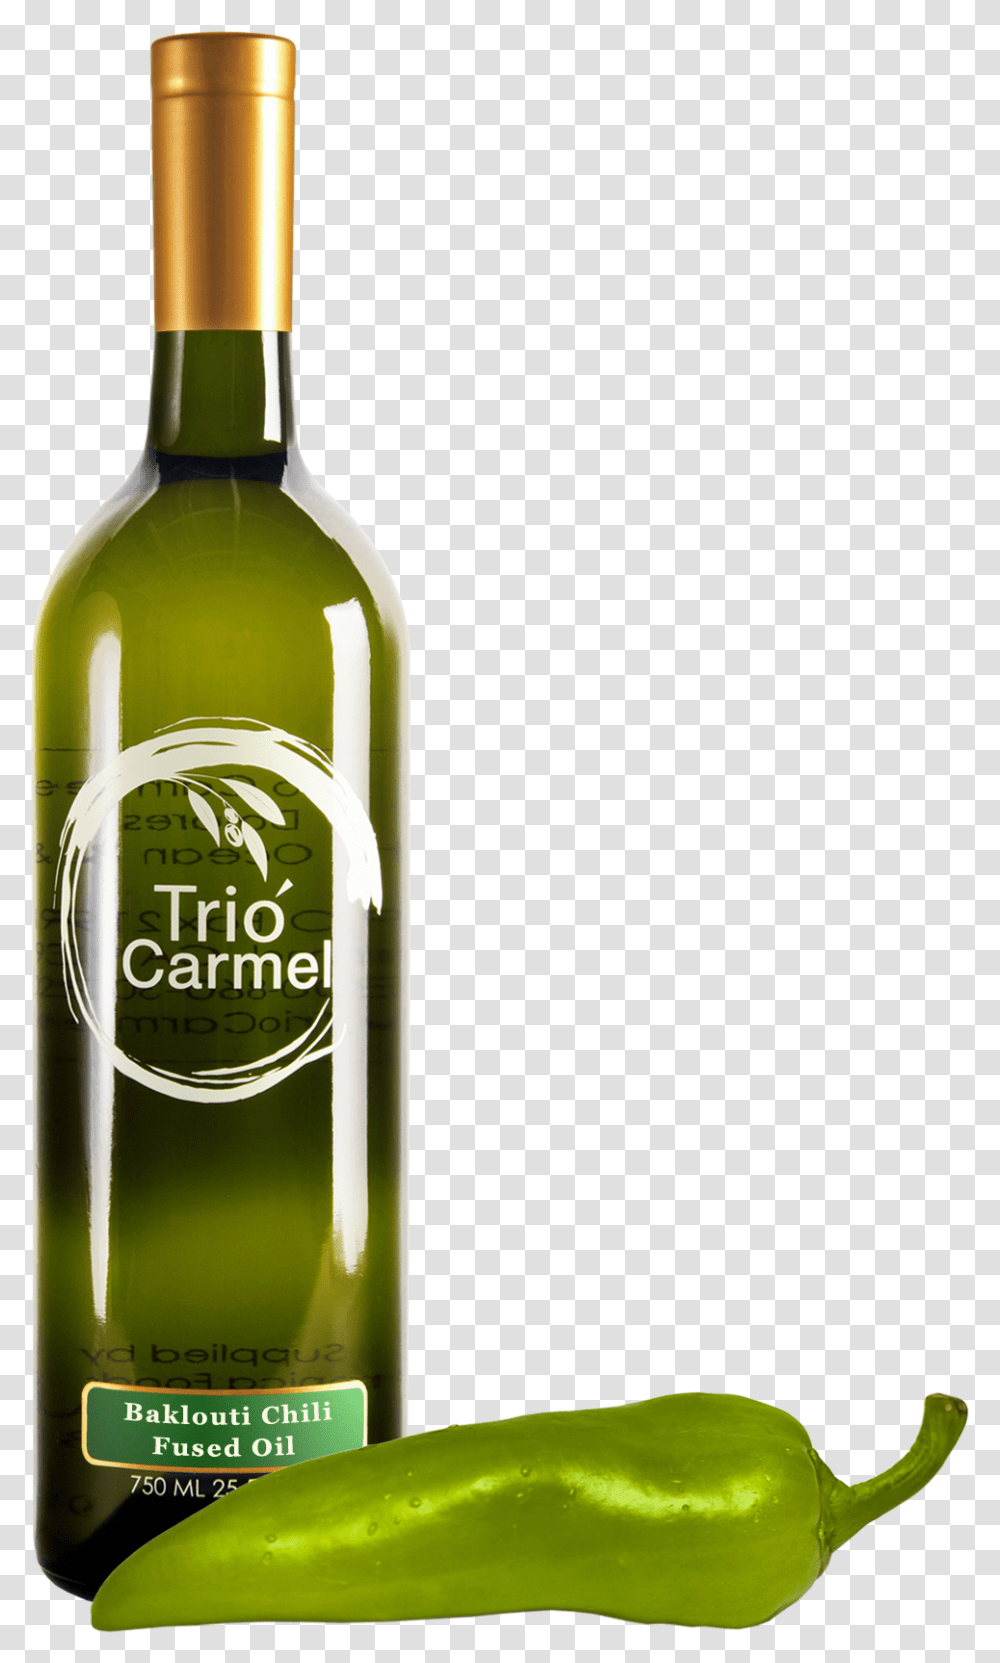 Green Chili, Bottle, Beverage, Drink, Alcohol Transparent Png